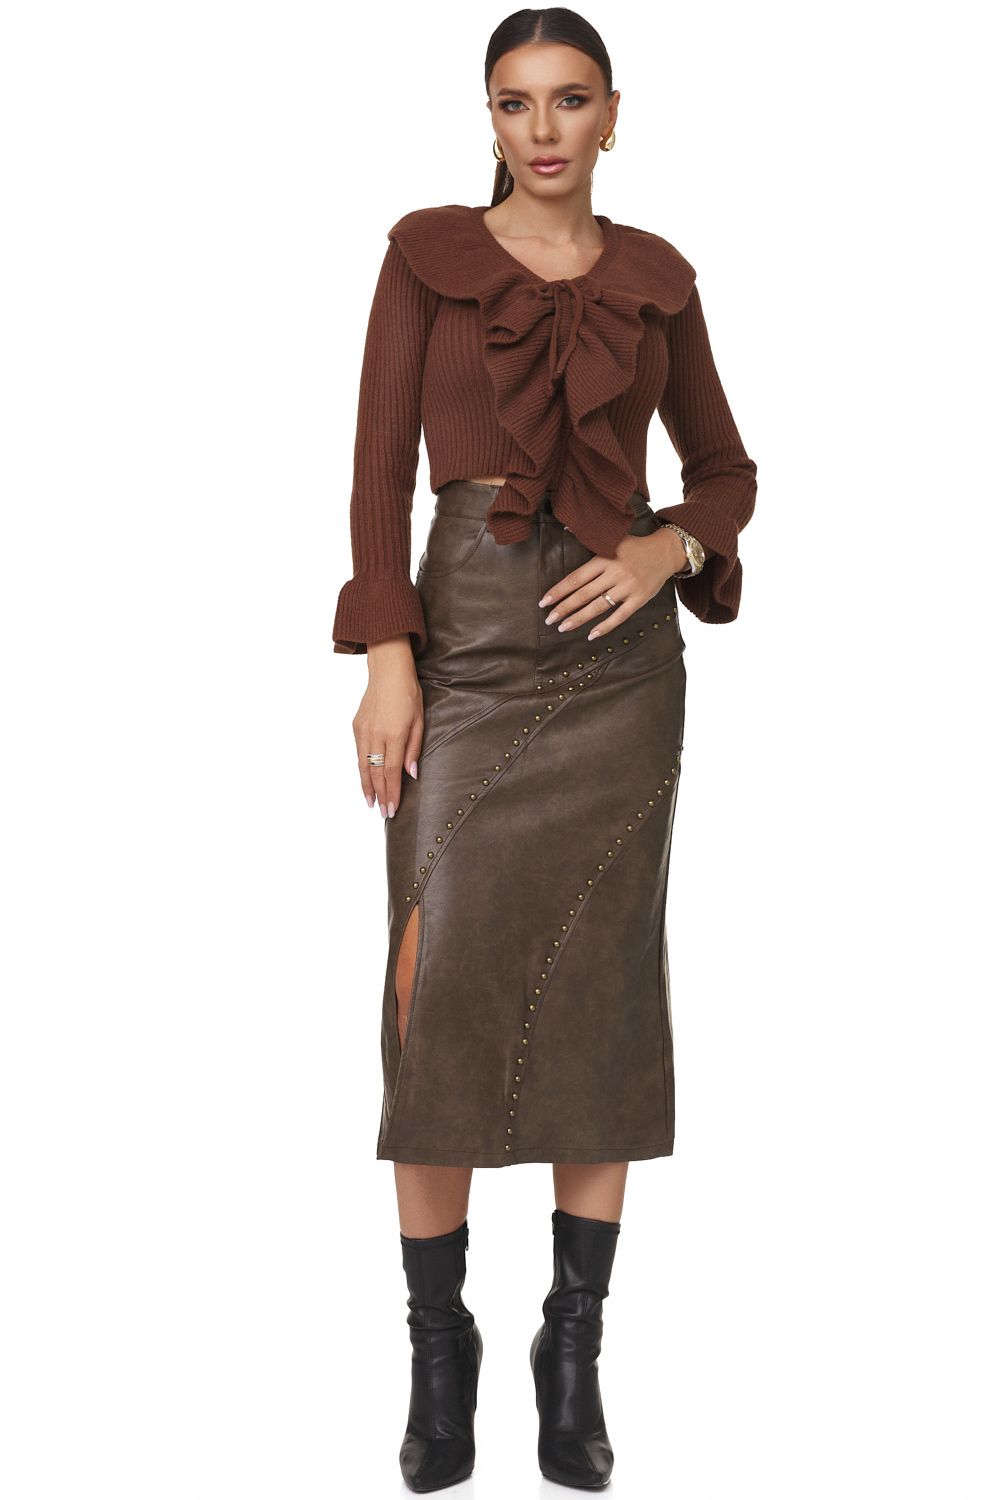 Sienia Bogas casual brown ladies skirt